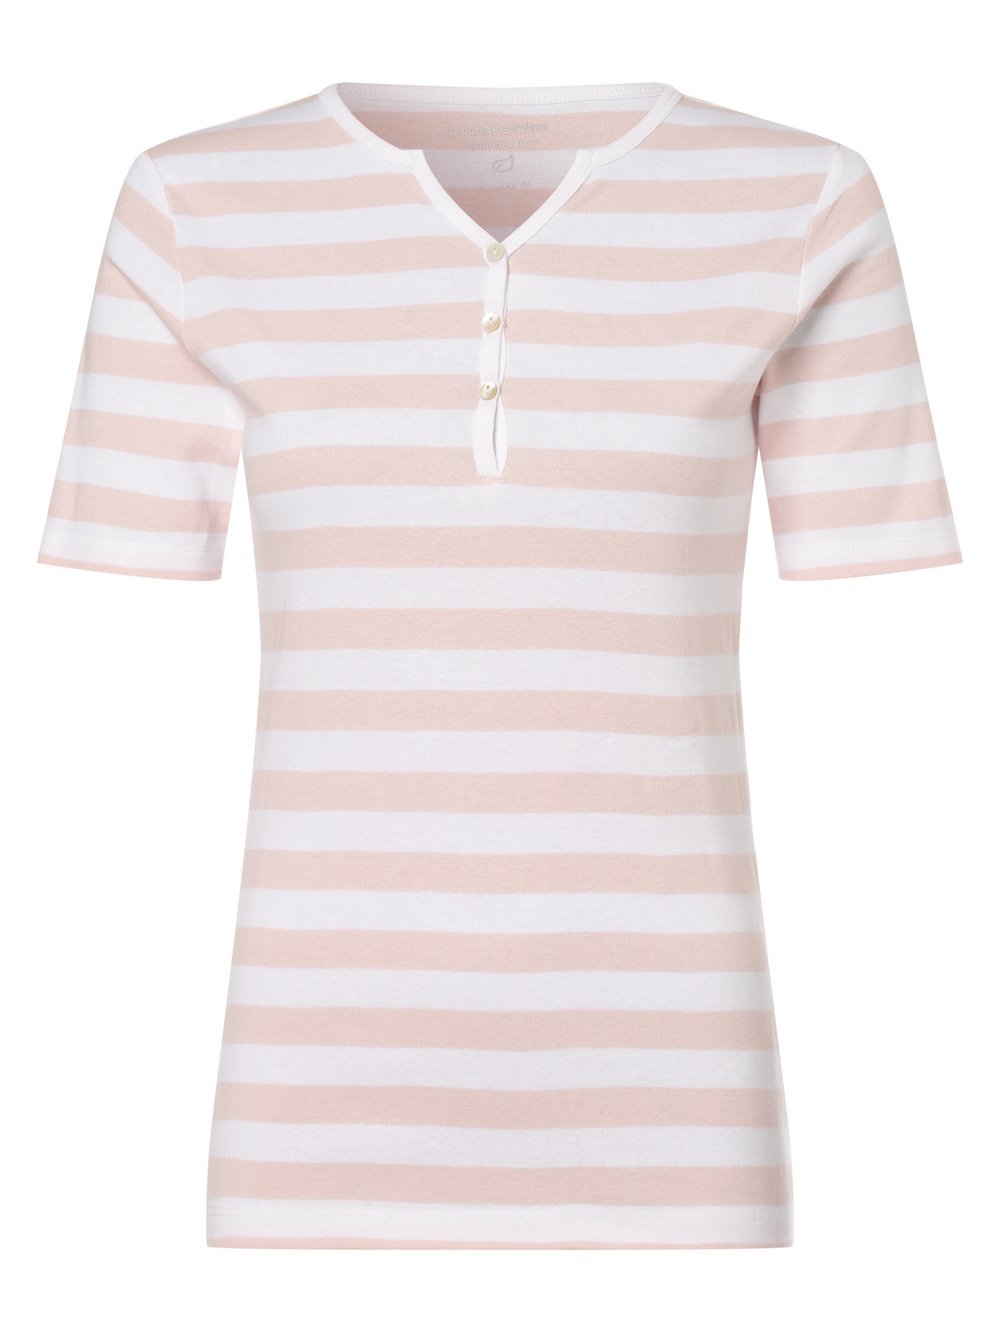 brookshire - T-shirt damski, biały|różowy